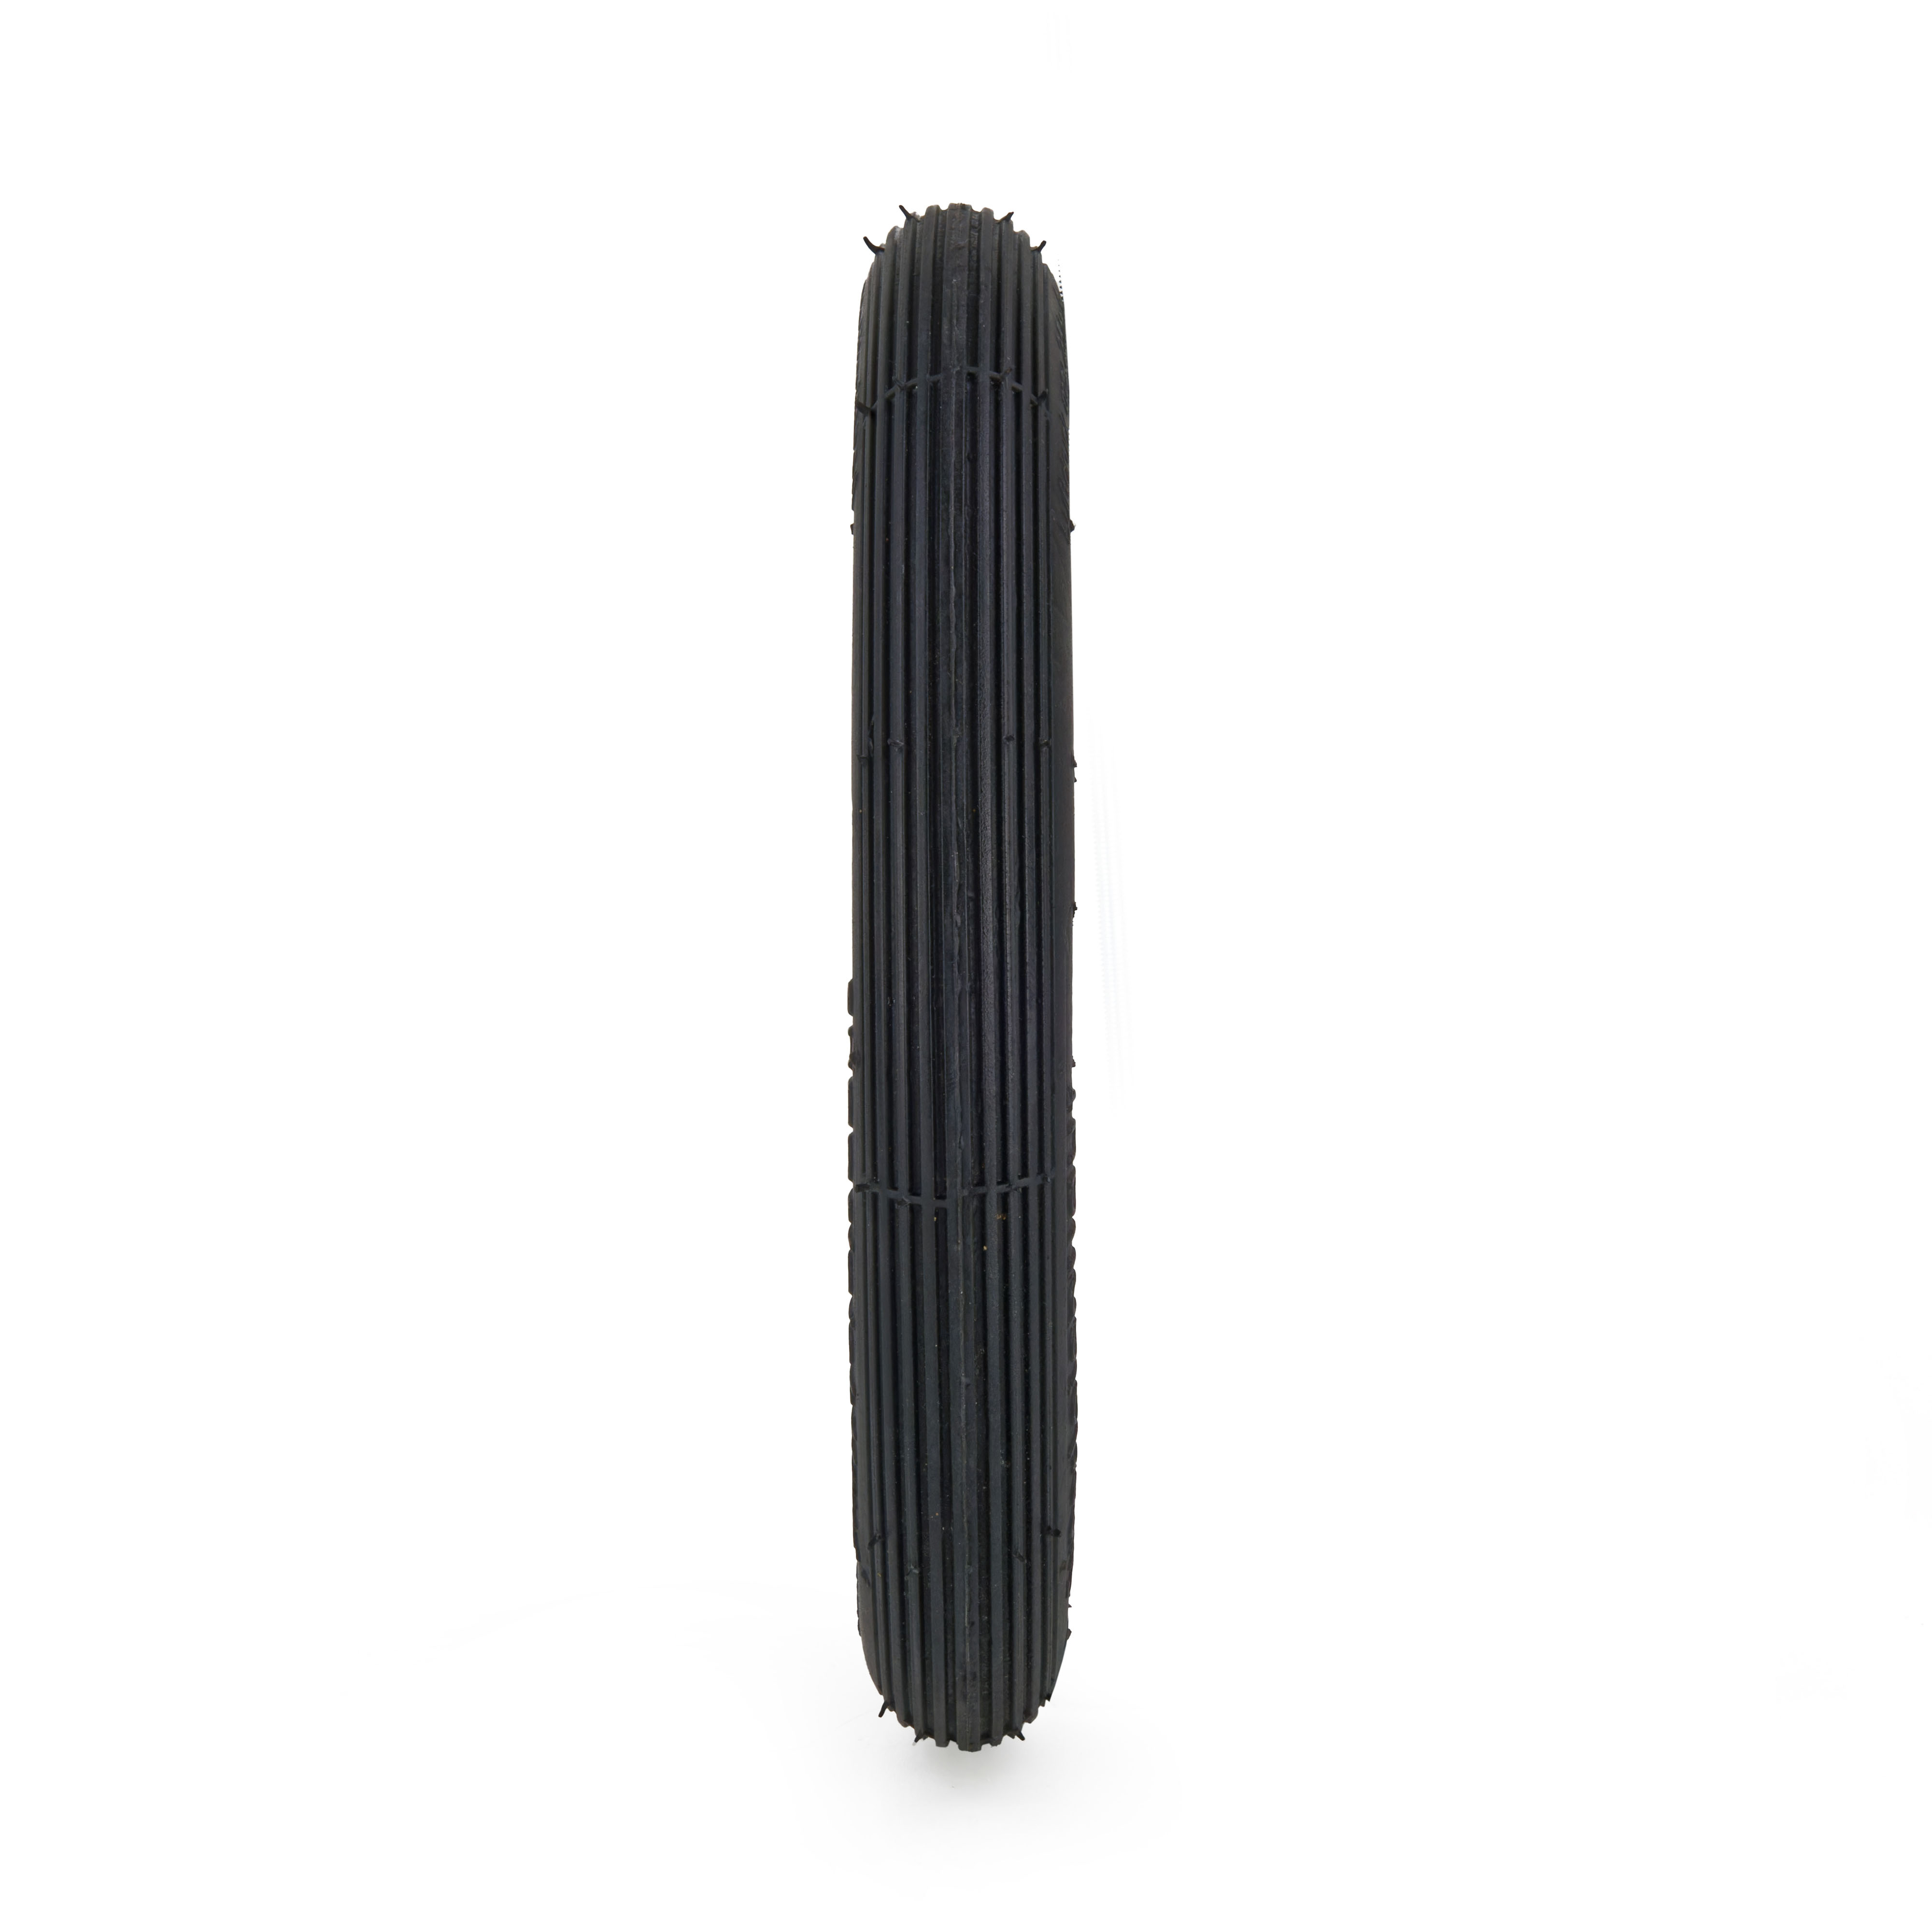 Reifen 8x1.1/4, 2PR, TT, Rolko R-103, schwarz - Profilansicht